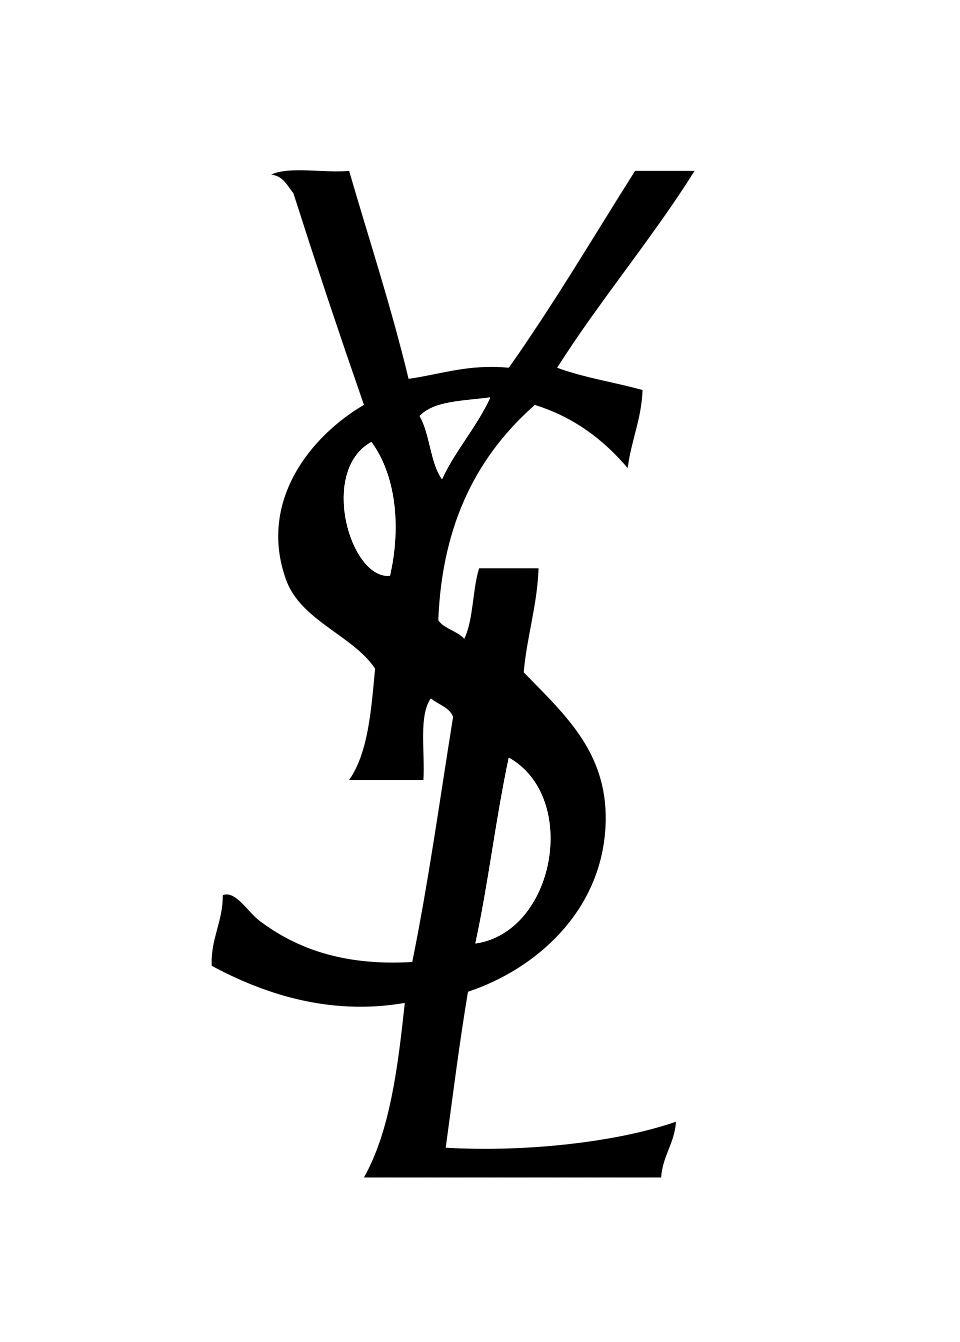 Yves Saint Laurent Logo - Pin by Anna Lukin on Logo YSL | Pinterest | Saint laurent, Yves ...